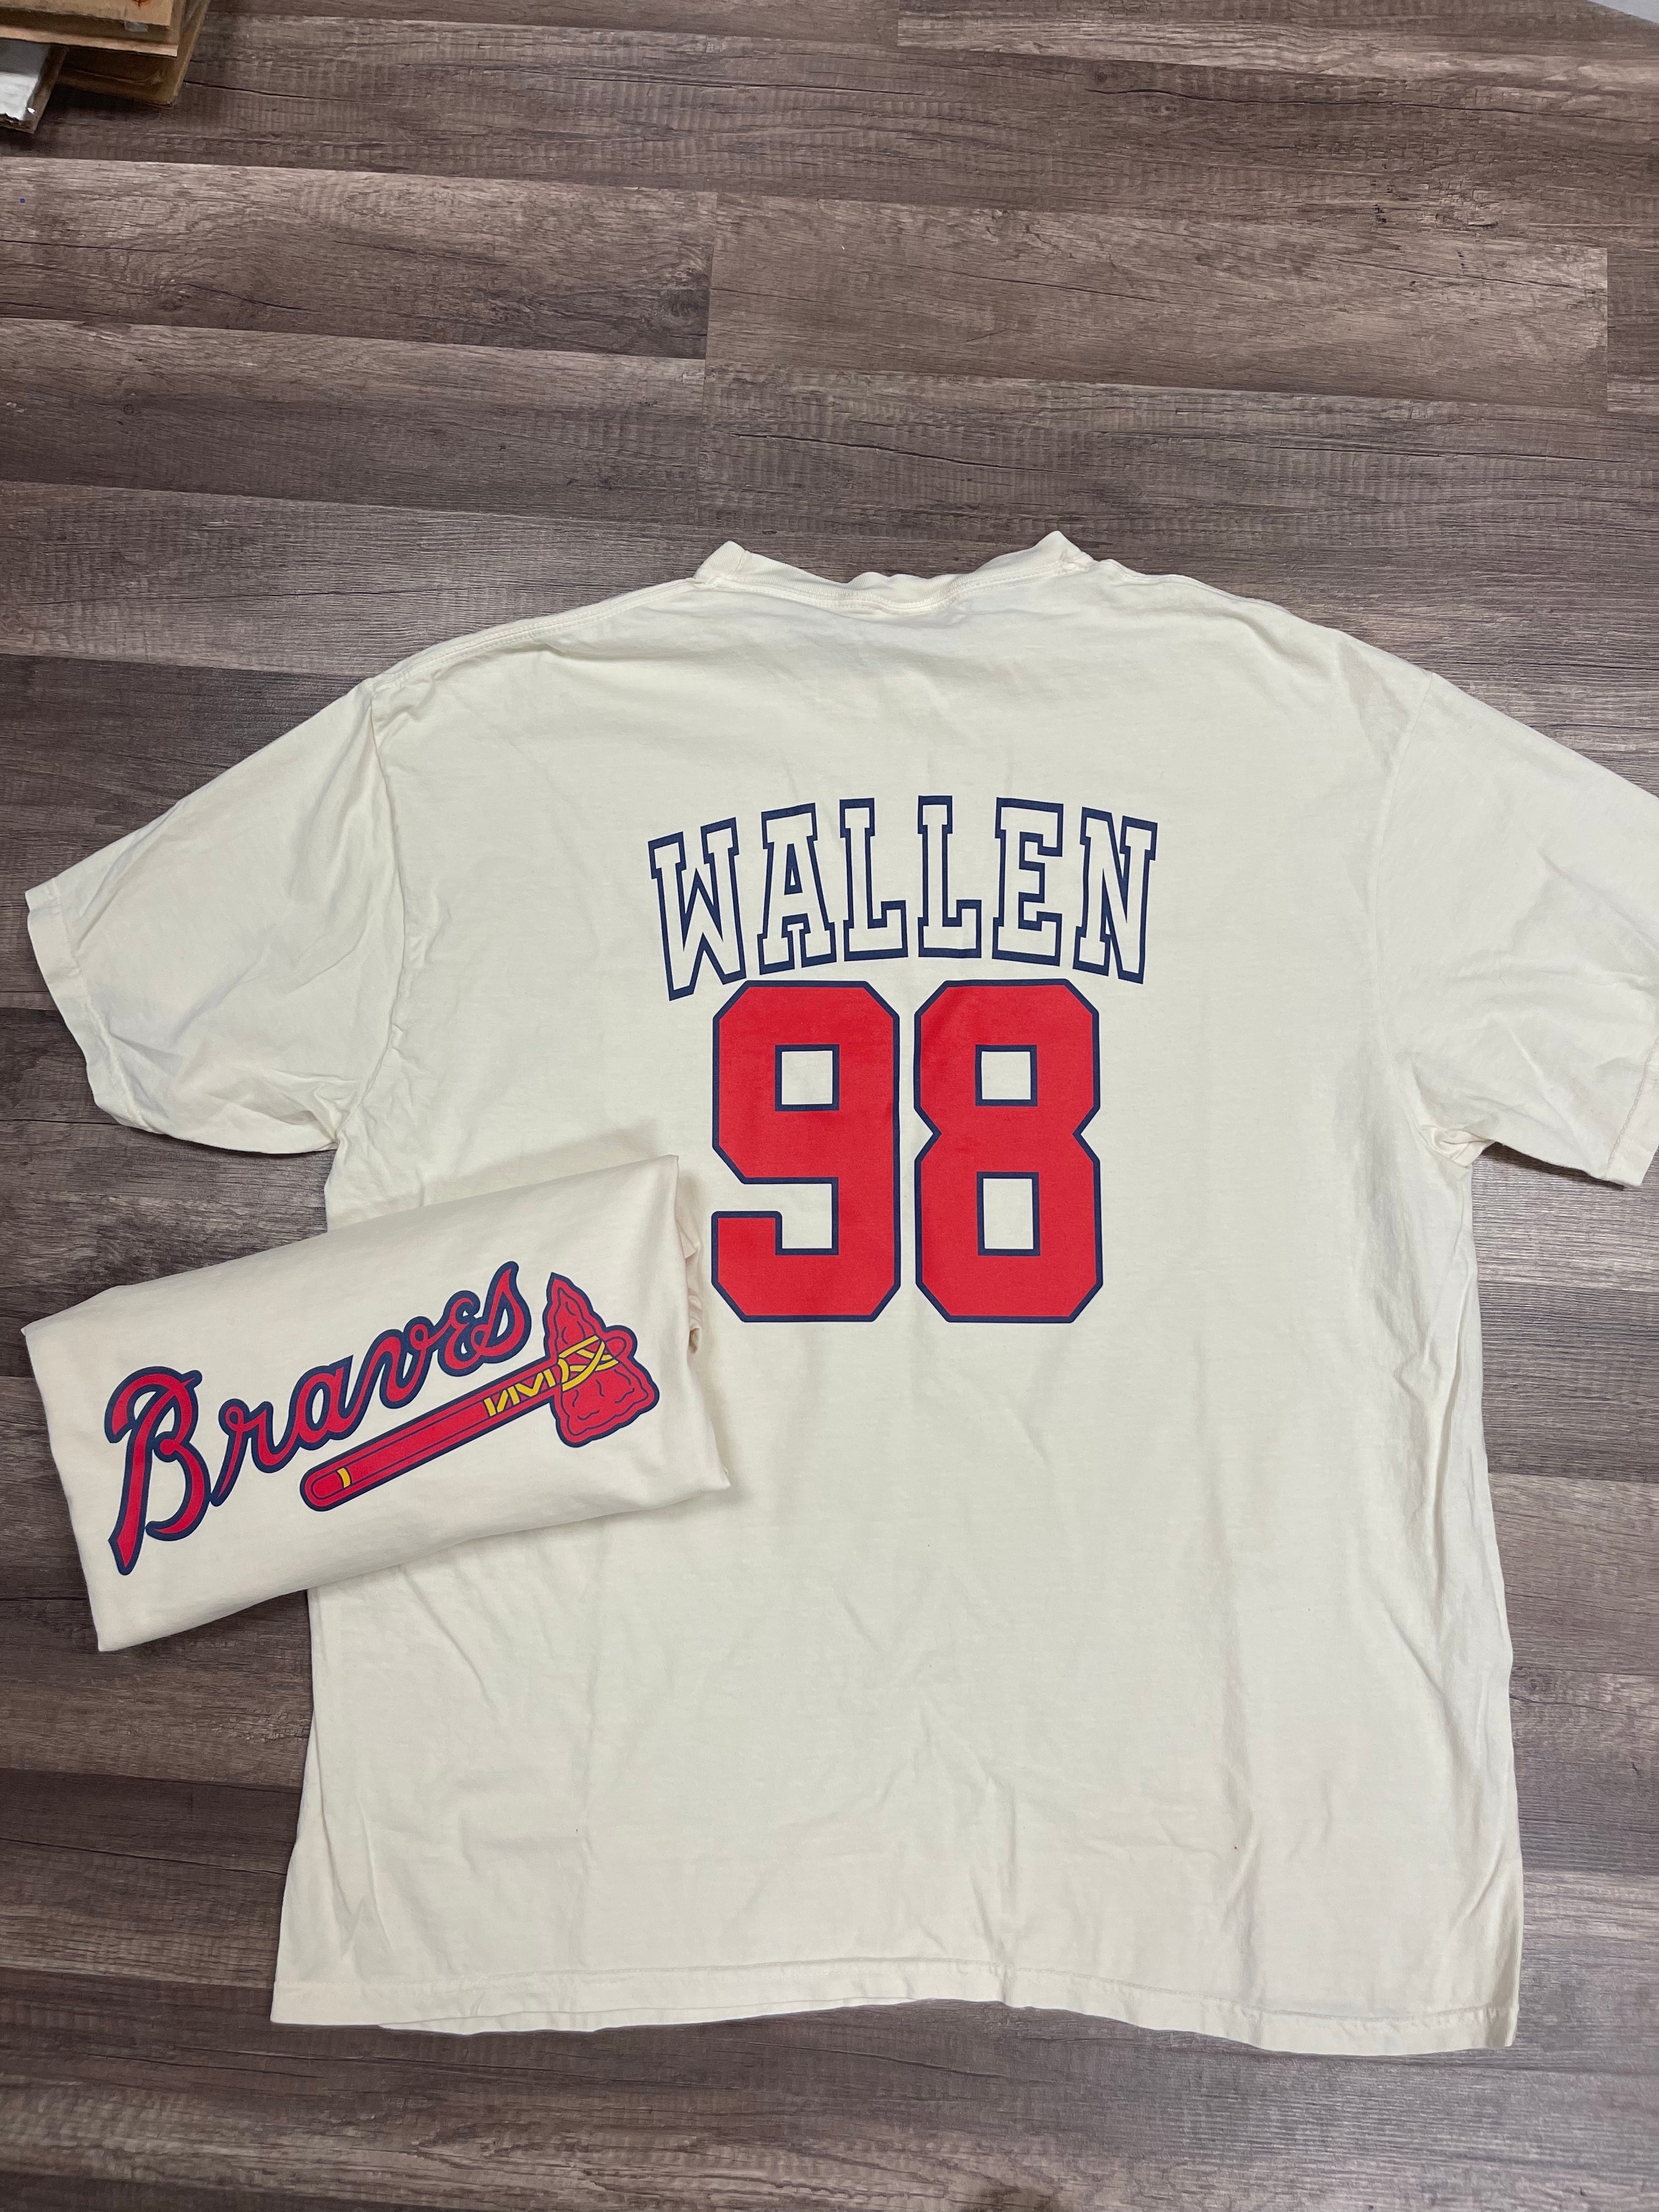 Wallen 98 Braves T-Shirt – C+C Boutique L L C